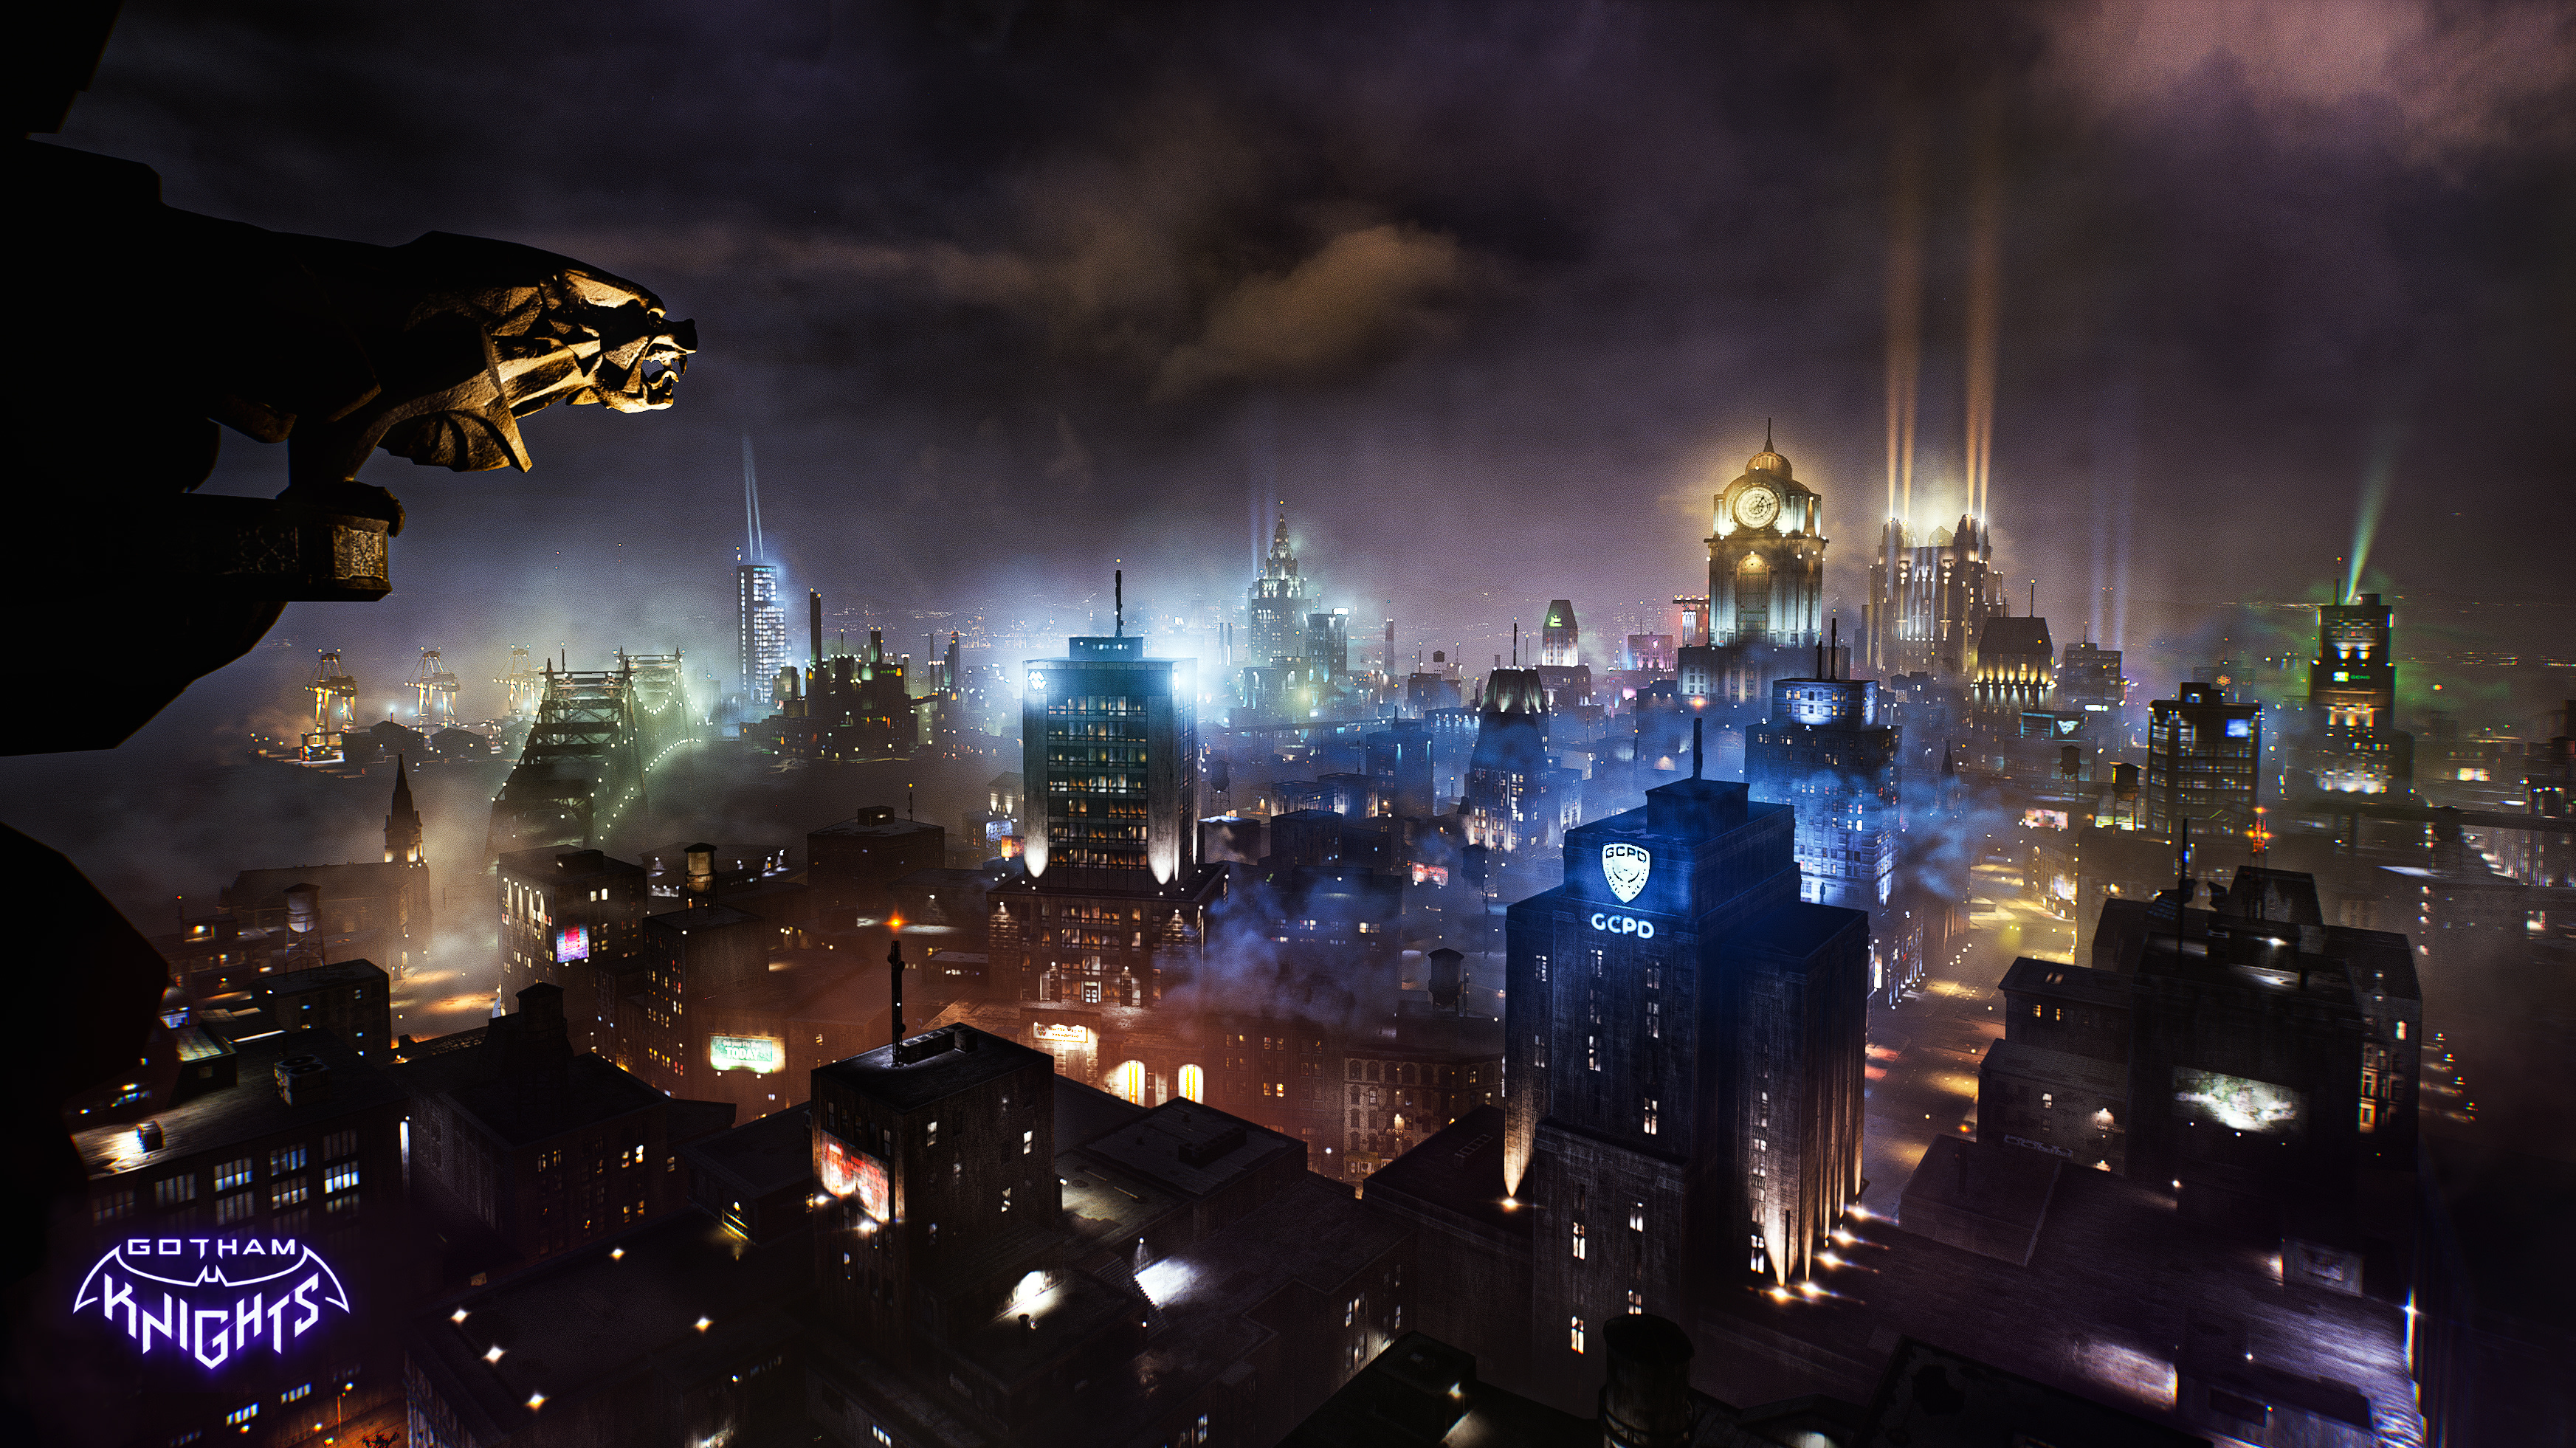 Gotham Knights là tựa game hành động nhập vai đầy kịch tính và hấp dẫn, lấy bối cảnh tại thành phố Gotham nổi tiếng trong loạt phim Batman. Nếu bạn là fan của siêu anh hùng này và muốn tìm hiểu thêm về Gotham Knights, đừng bỏ lỡ cơ hội xem hình ảnh liên quan đến trò chơi này.